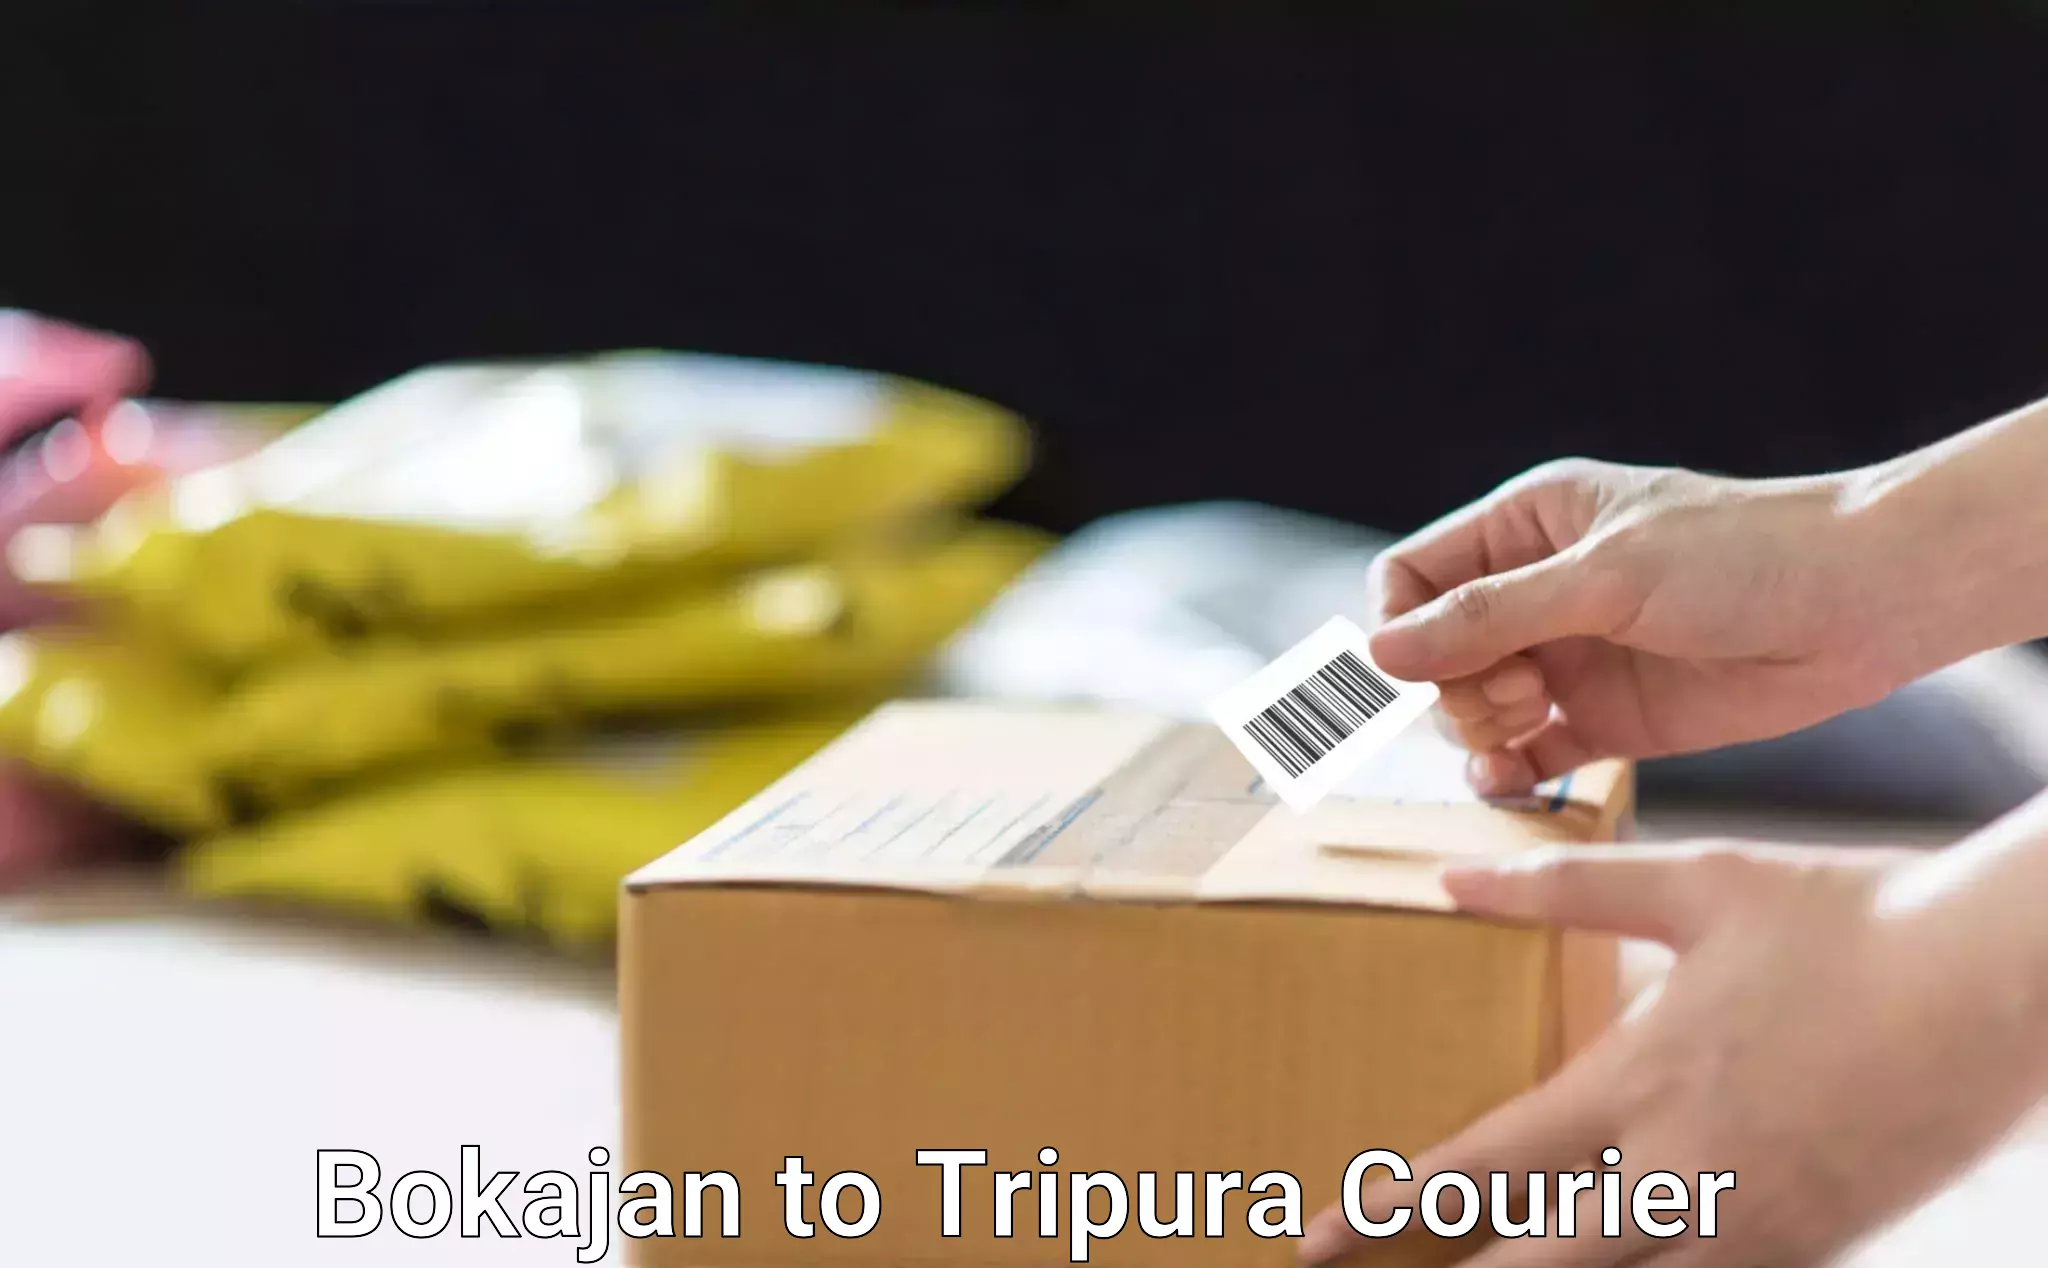 Efficient parcel delivery in Bokajan to Tripura